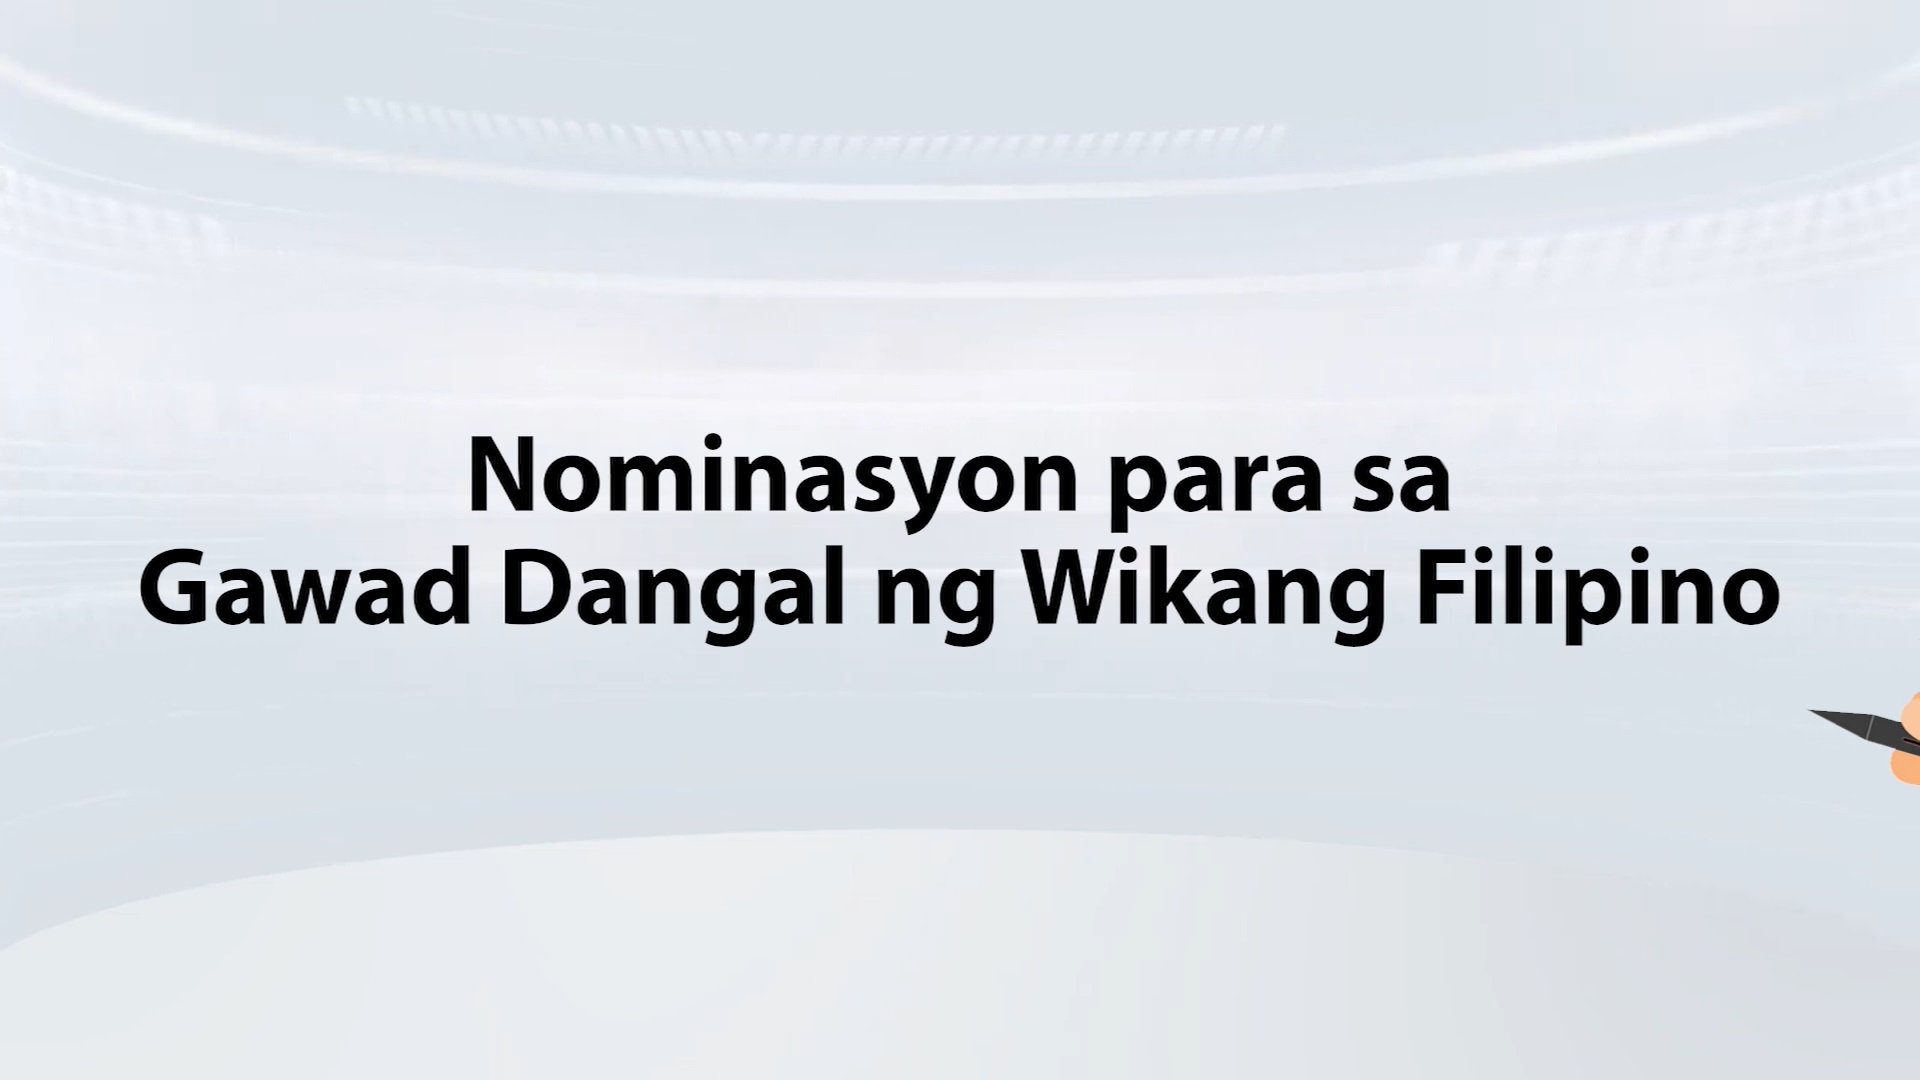 Gawad Dangal ng Wikang Filipino